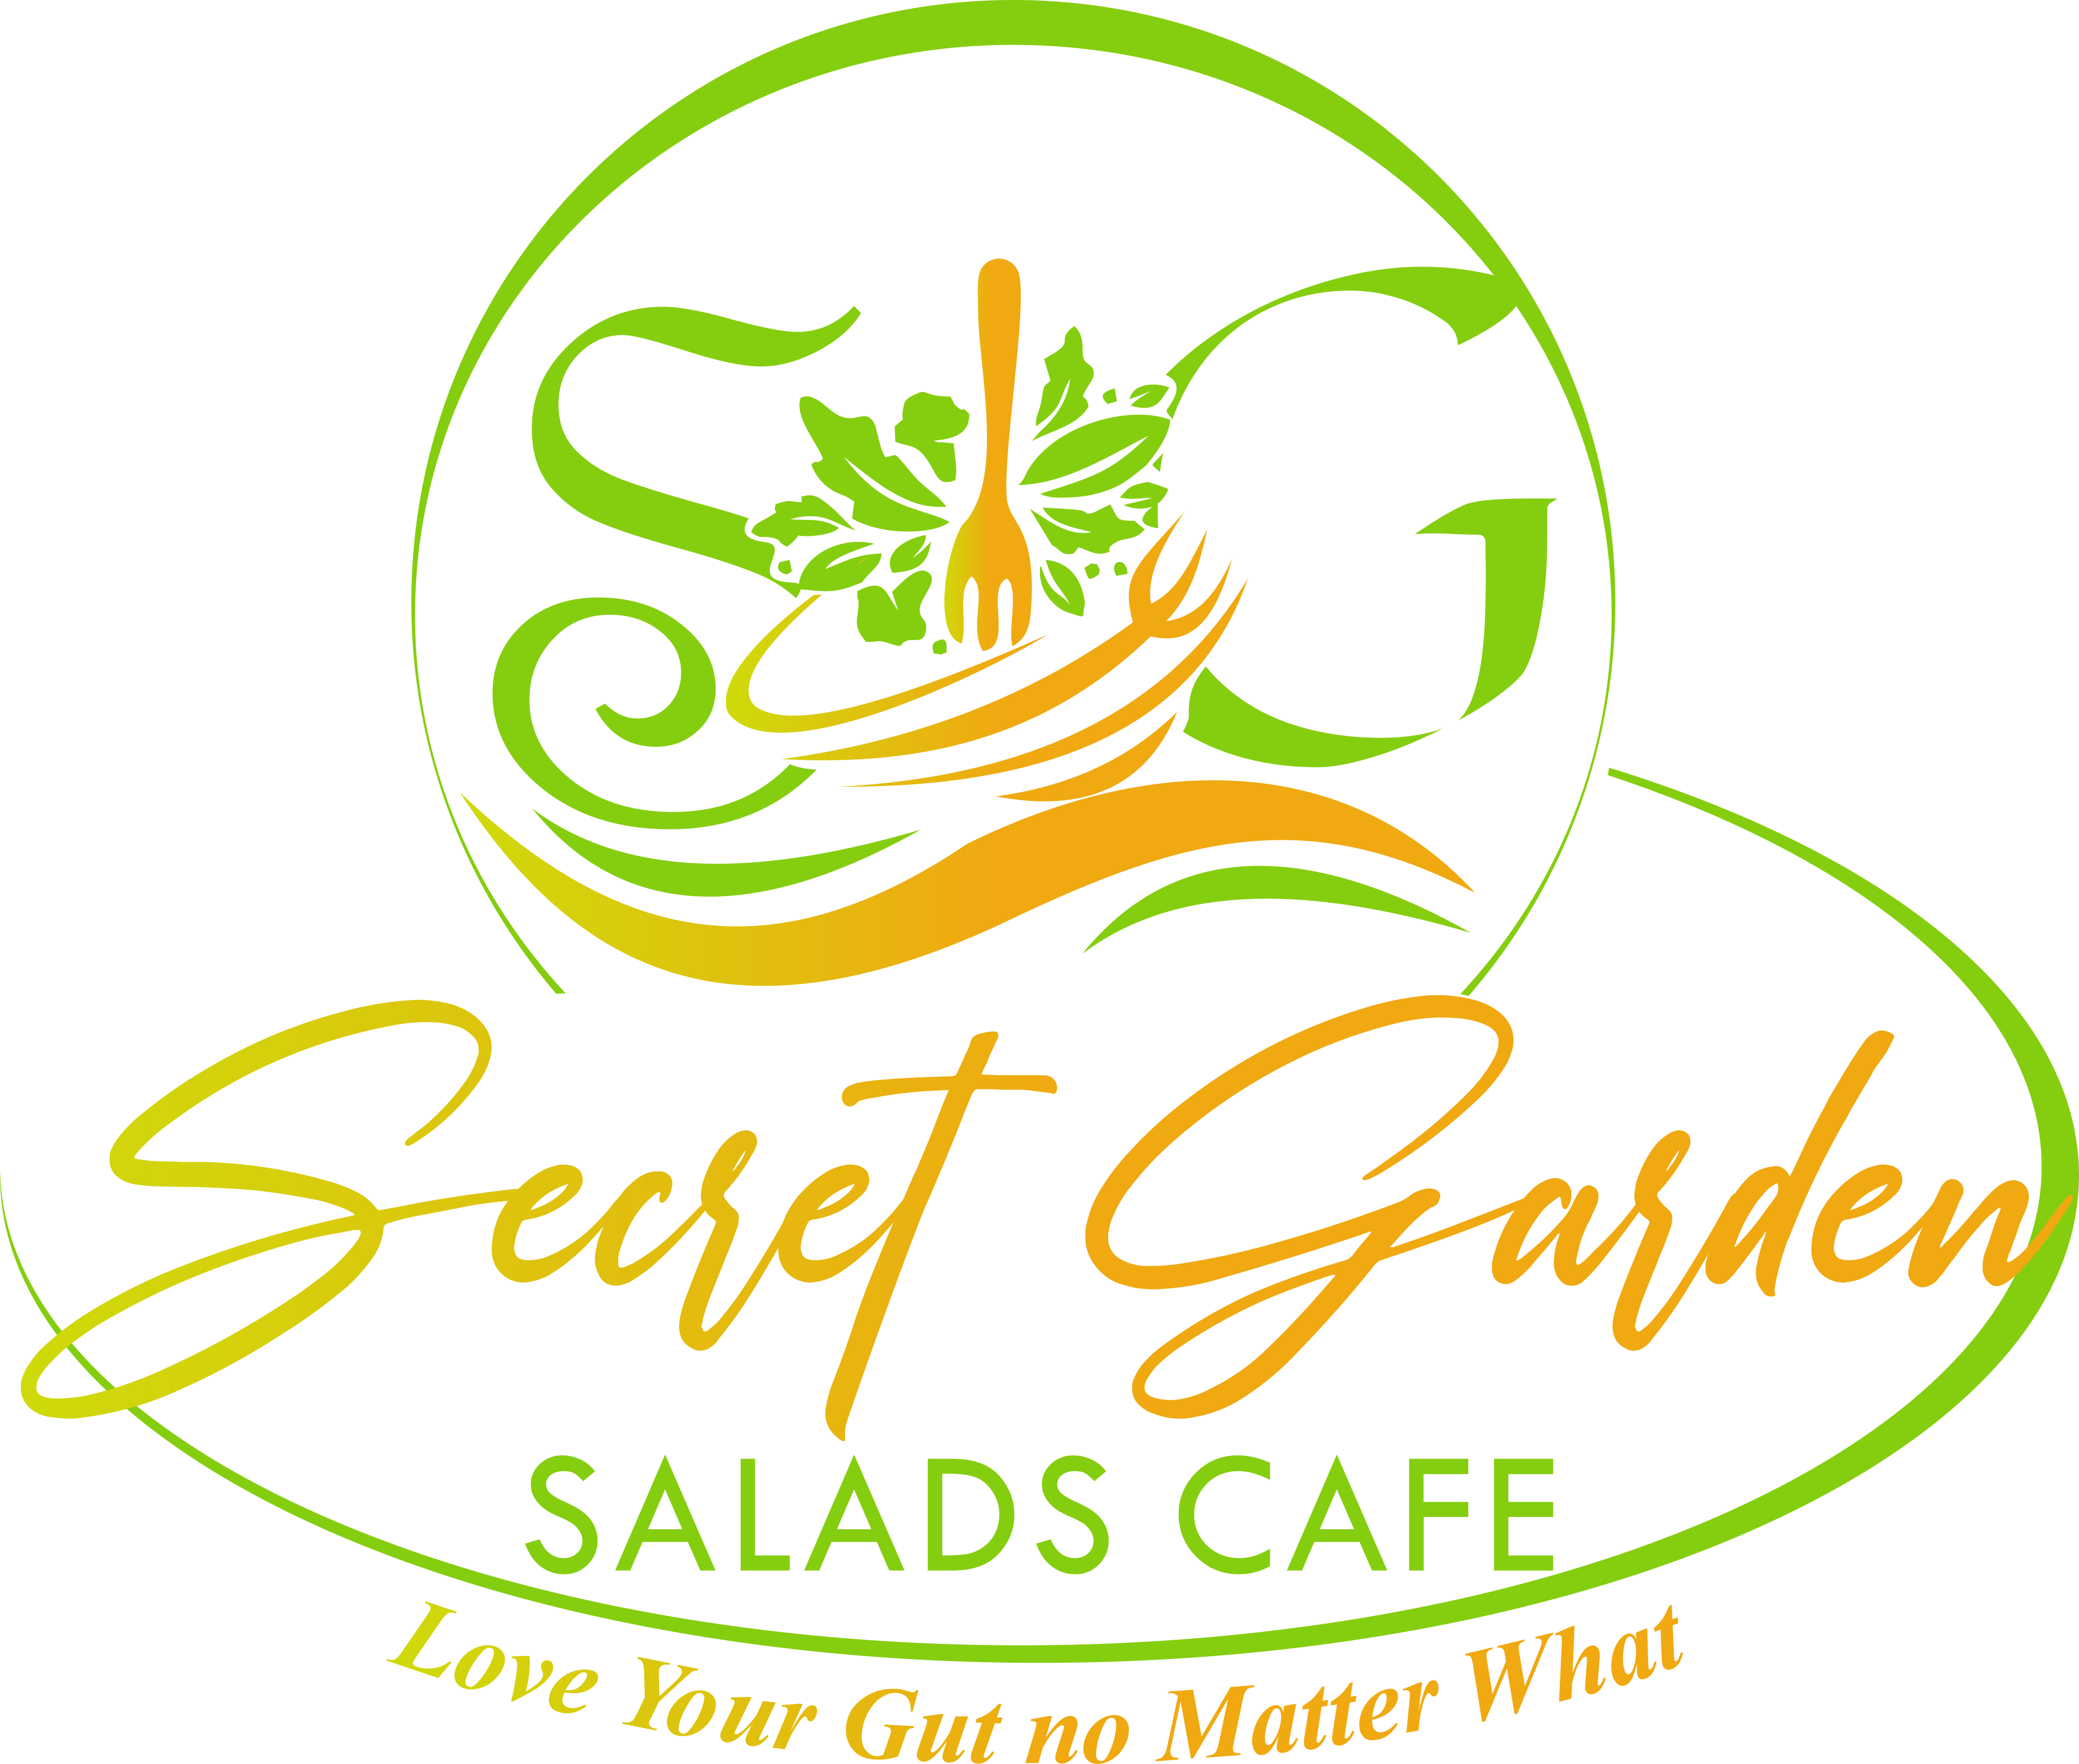 Secret Garden Salads Cafe Home